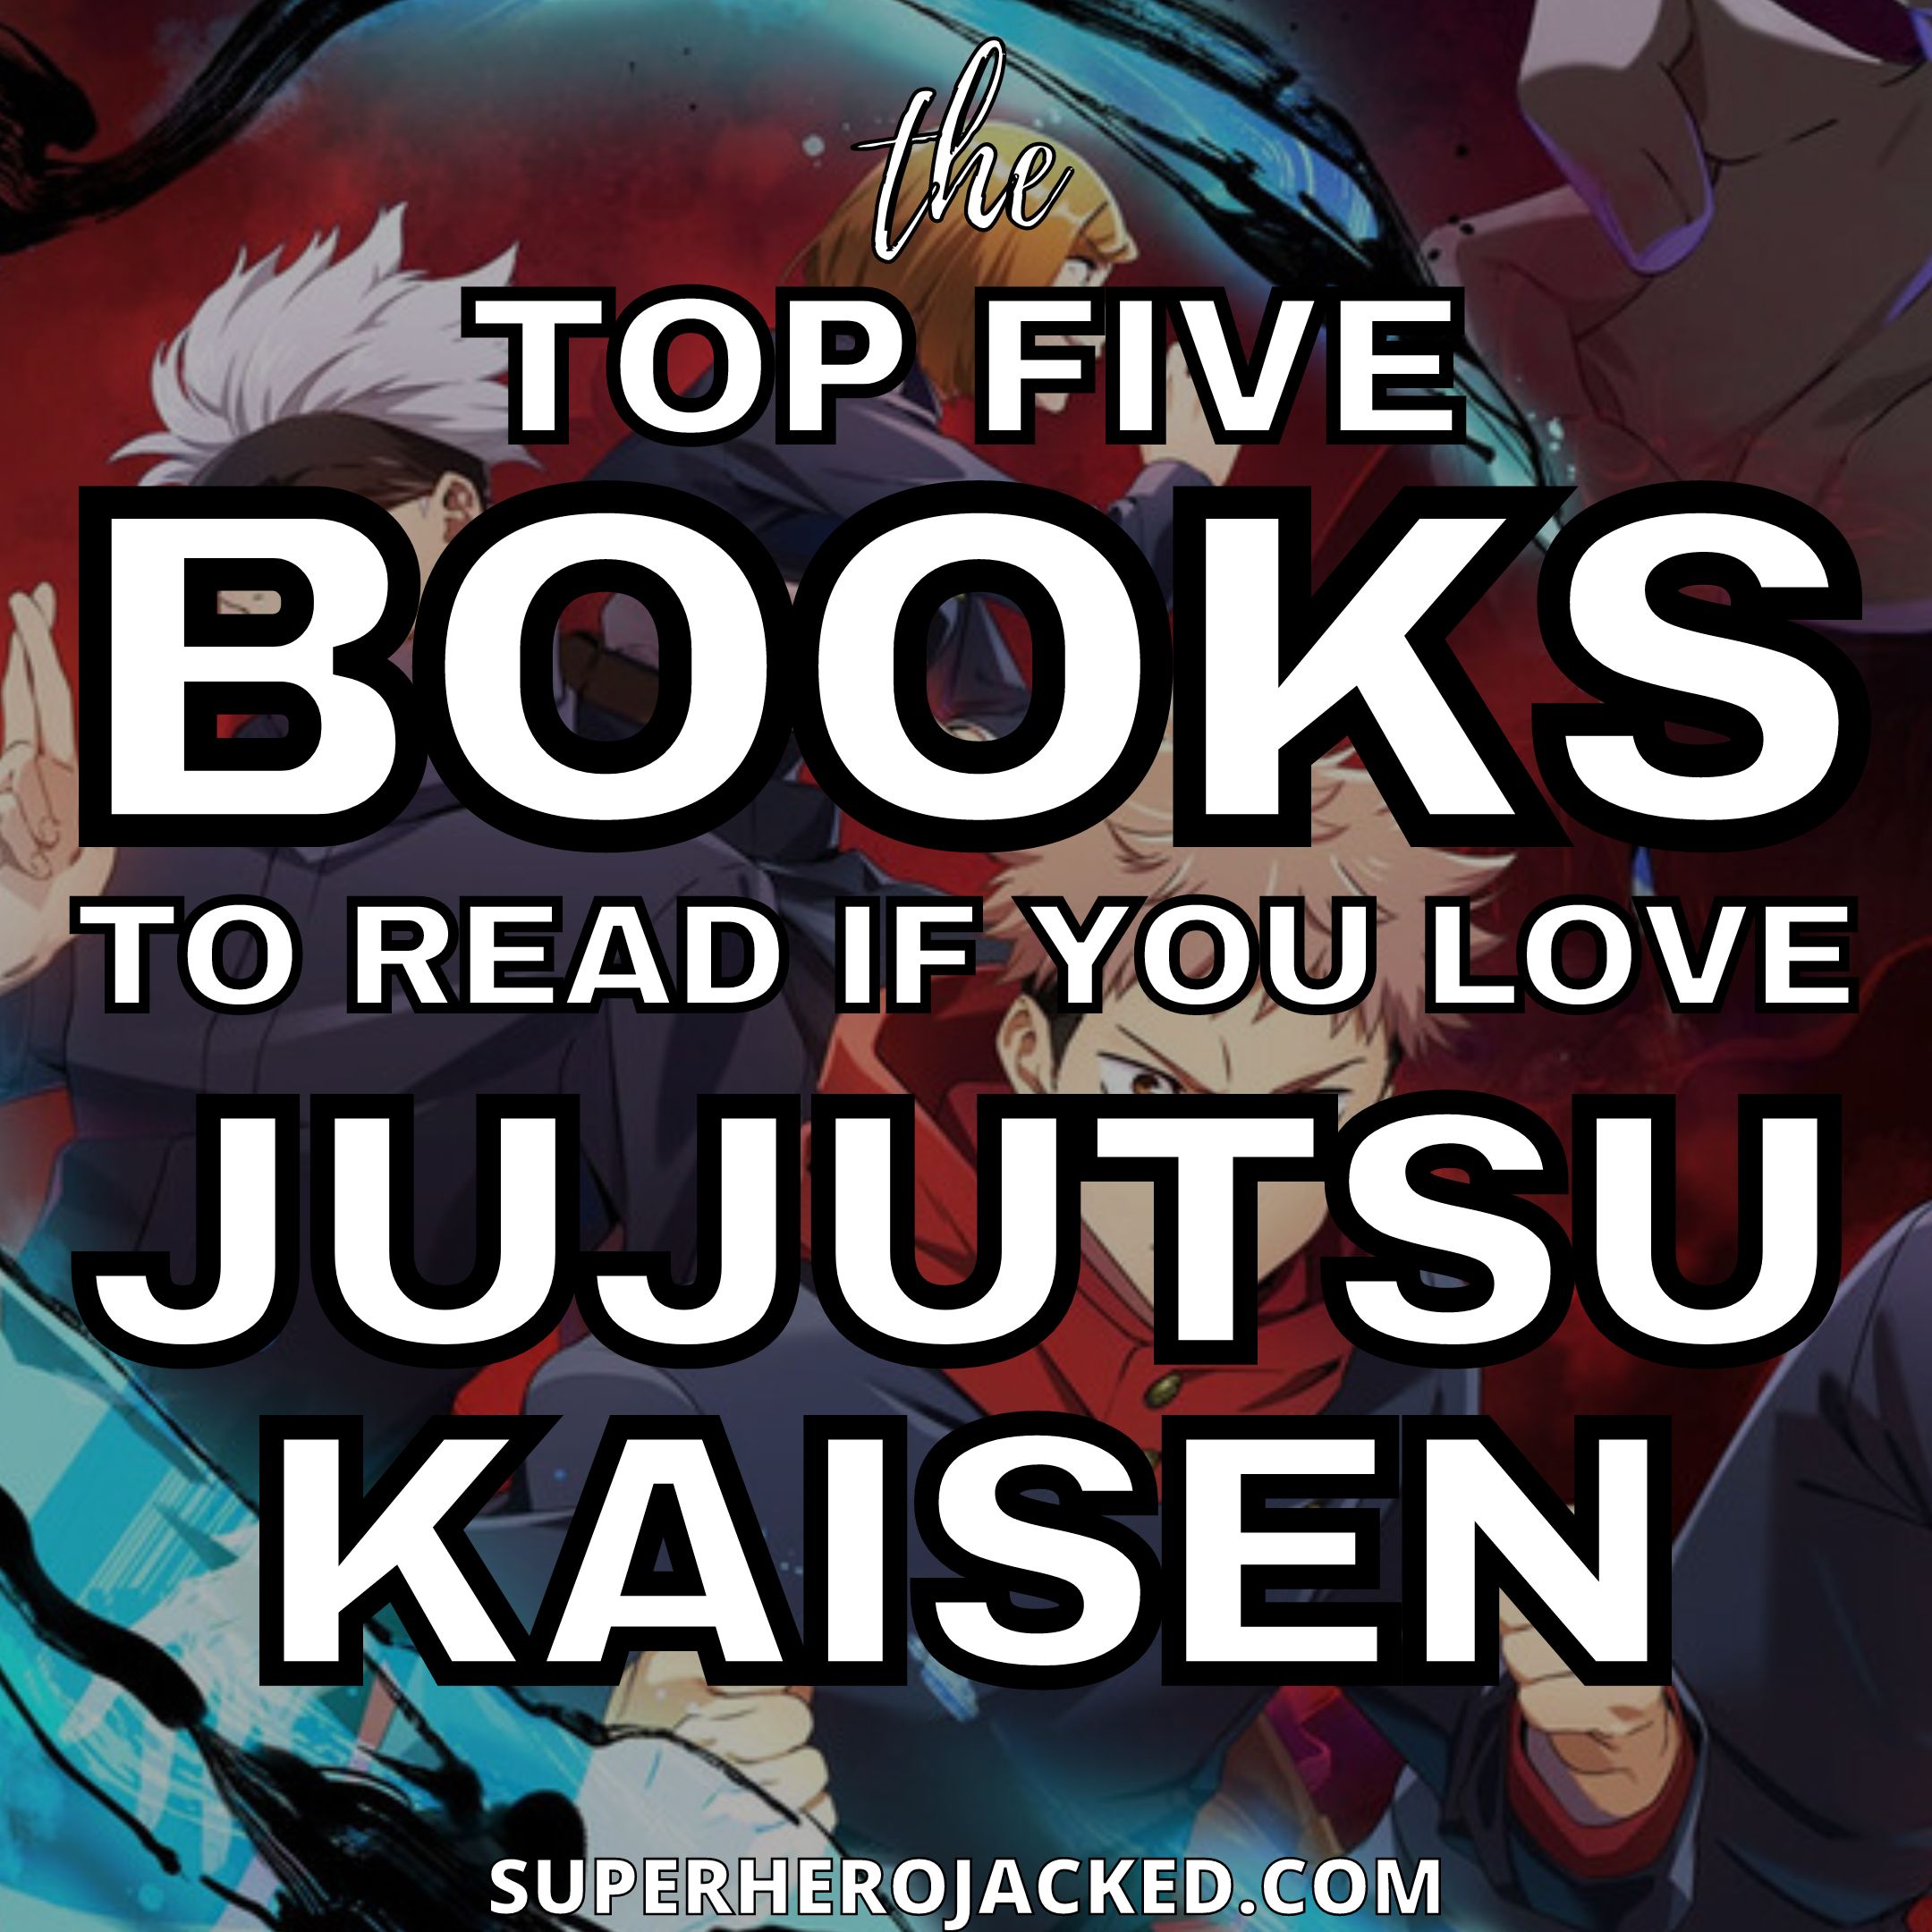 Light Novel Like Jujutsu Kaisen: Summer of Ashes, Autumn of Dust